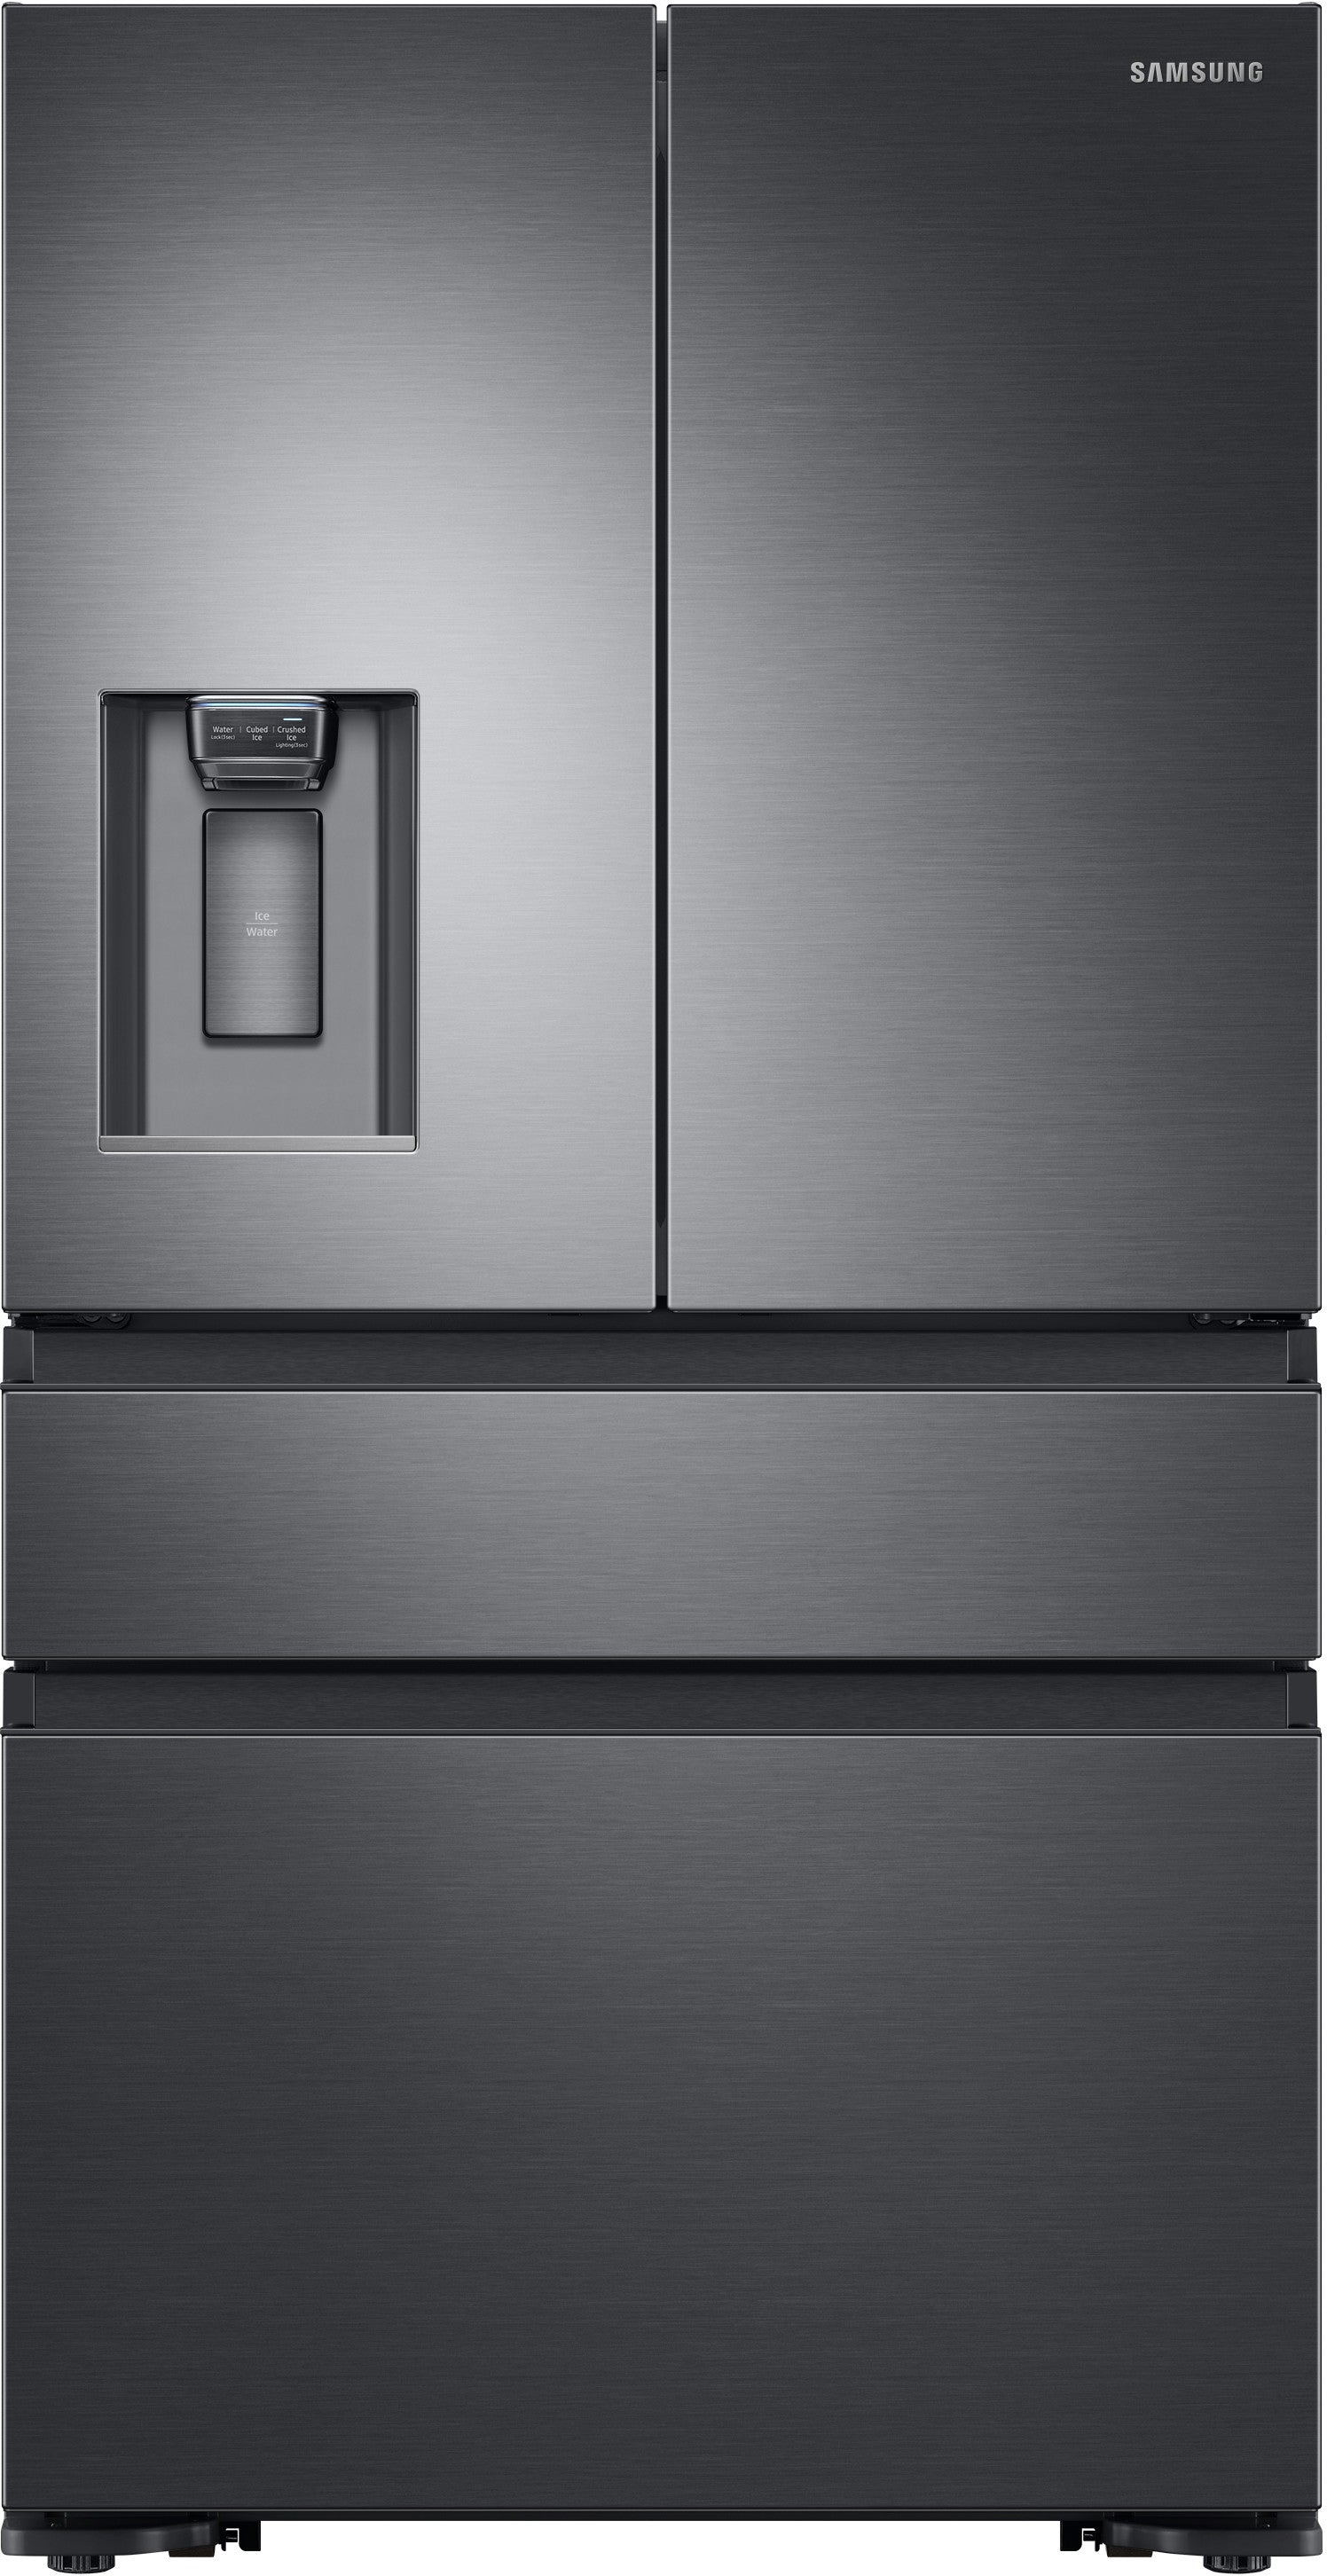 Samsung RF23M8070SG/AA 22.7 Cu. Ft. 4-Door Flex French Door Refrigerator